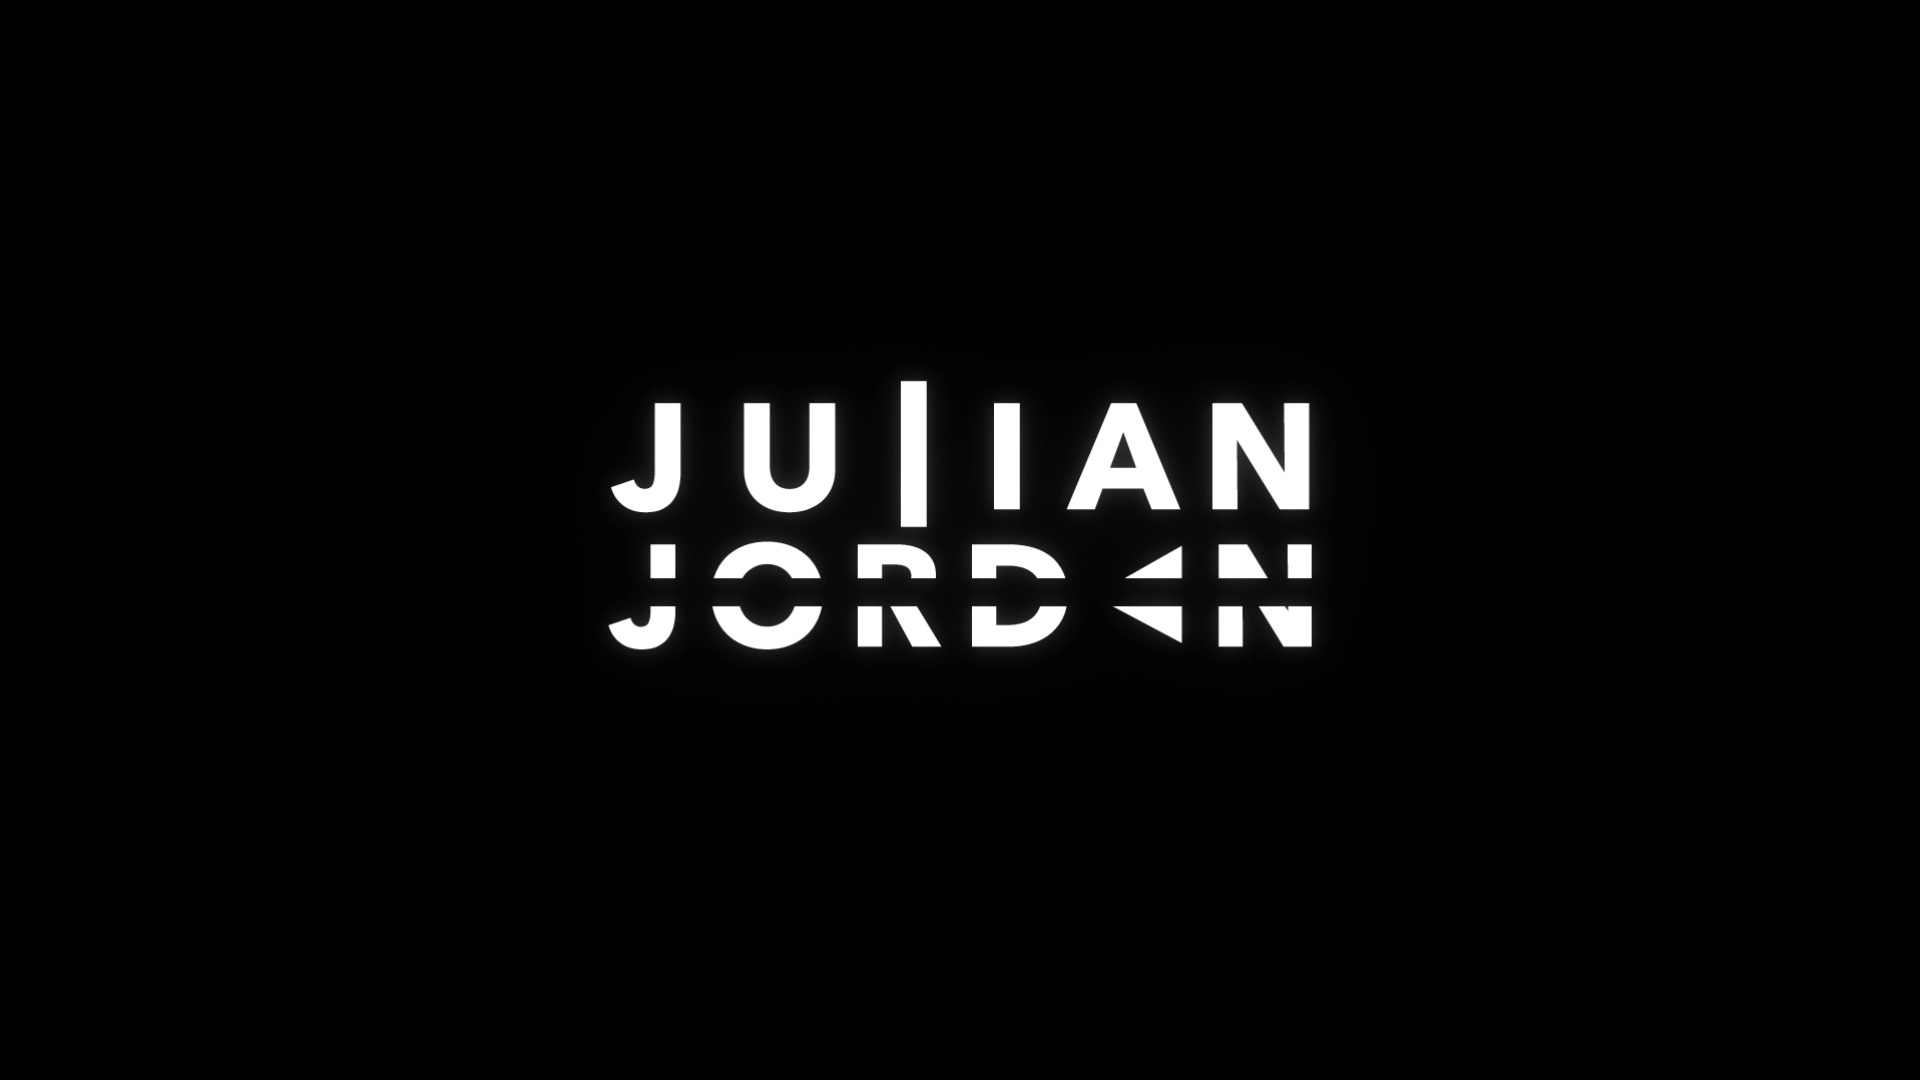 Julian Jordan Wallpapers